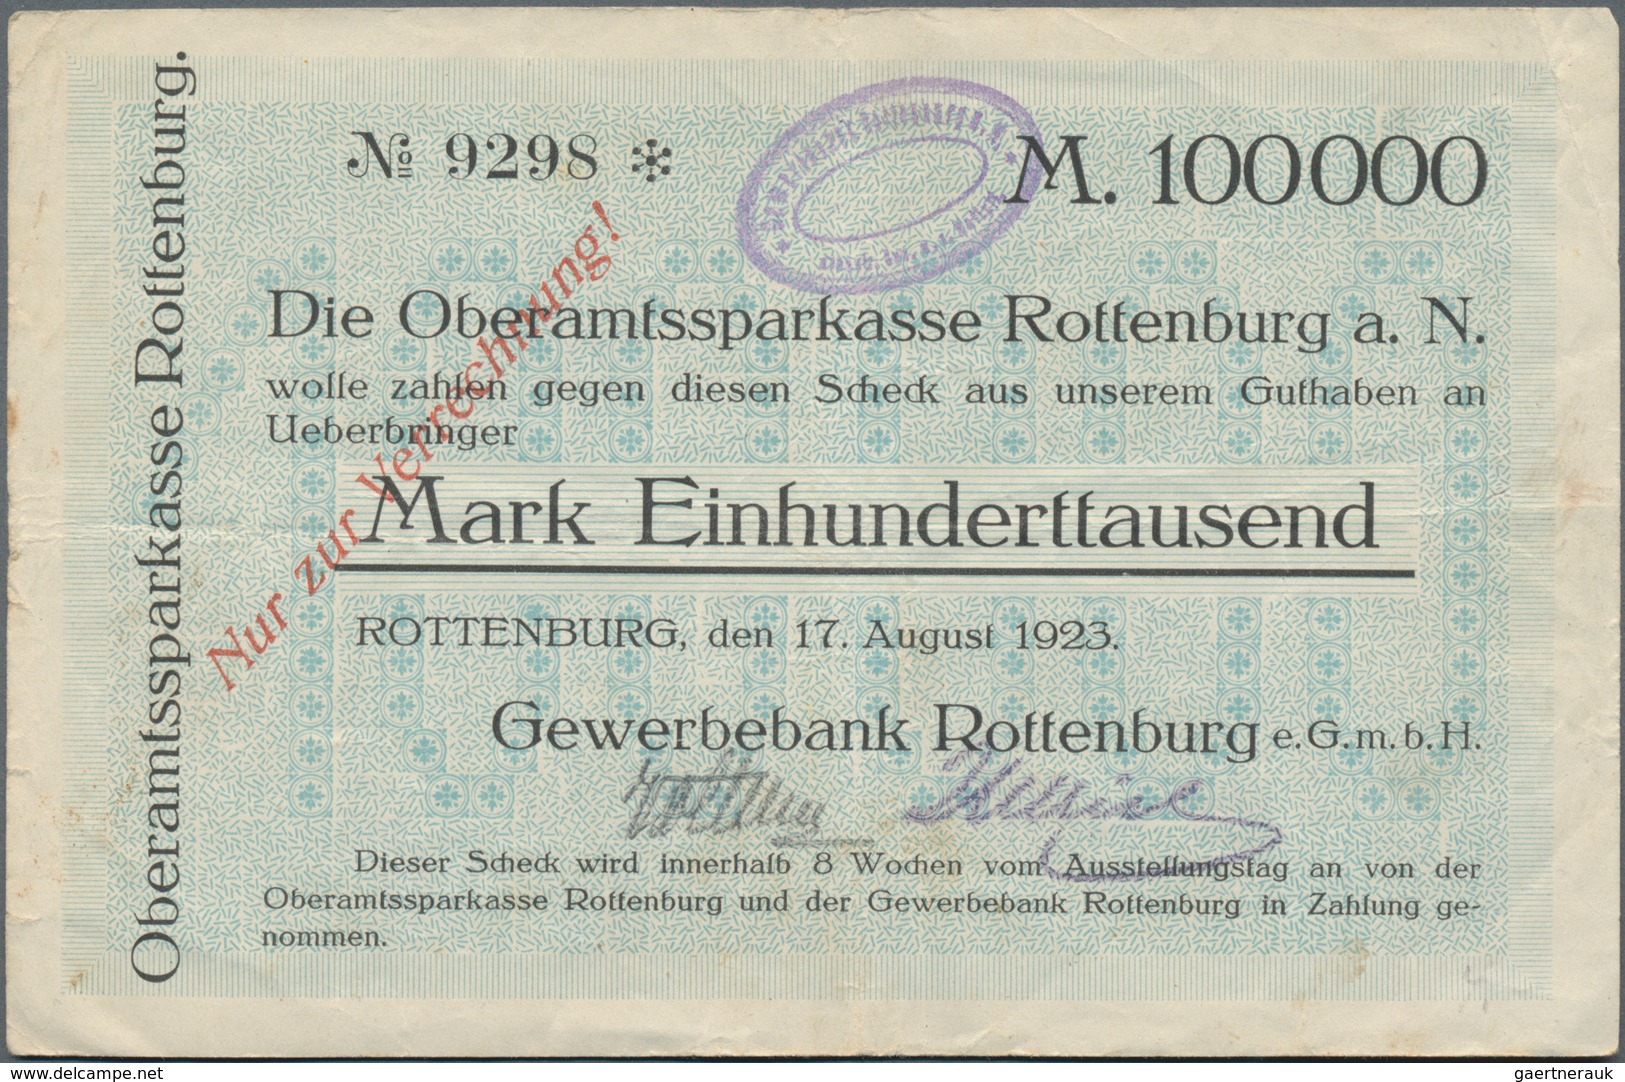 Deutschland - Notgeld - Württemberg: Rottenburg, Gewerbebank, 100 Tsd. Mark, 17.8.1923, Scheck Auf O - [11] Local Banknote Issues